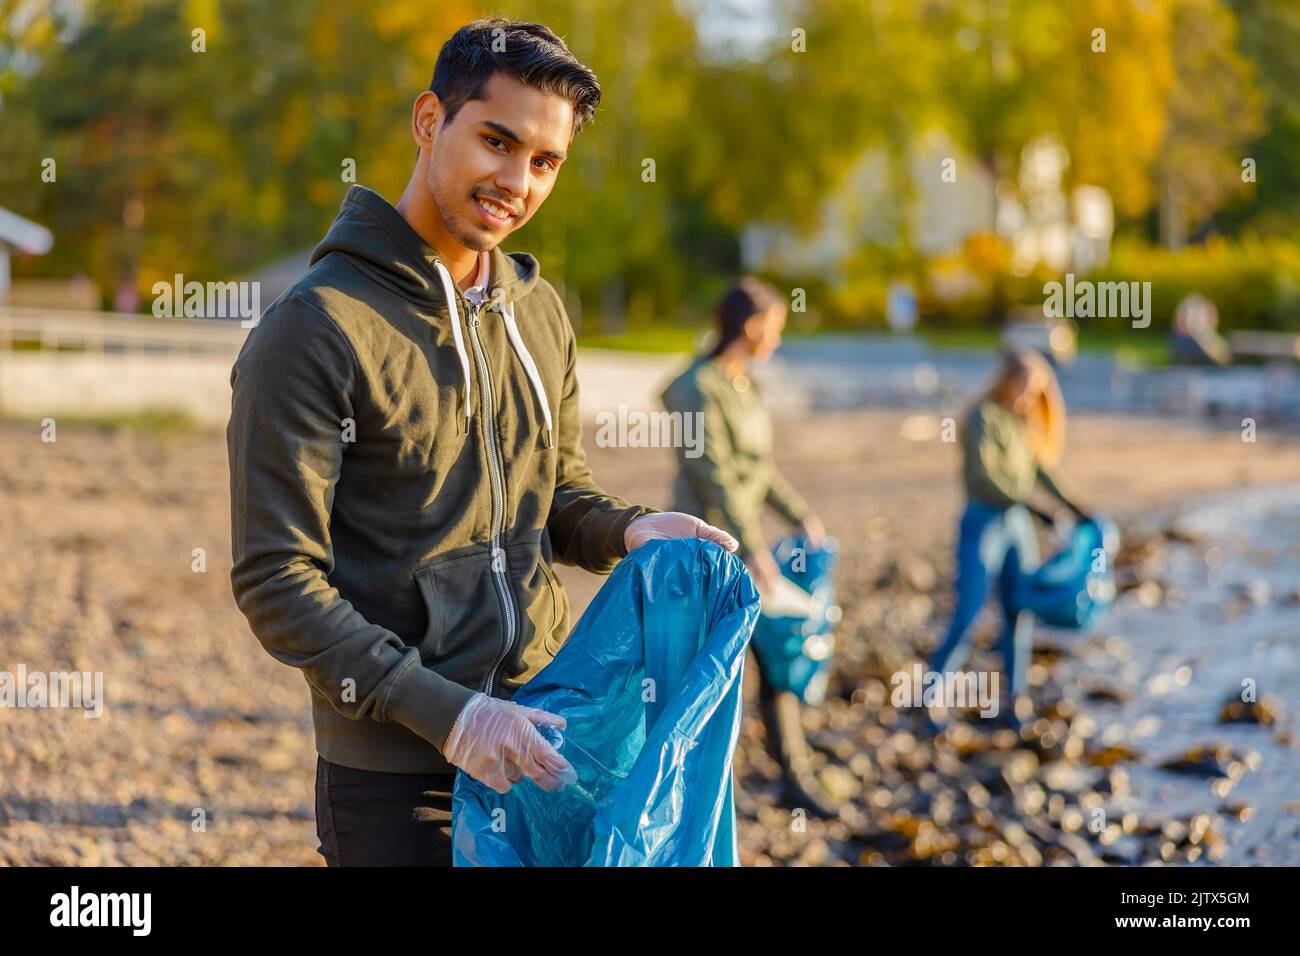 L'homme collecte les ordures dans le sac avec un groupe de bénévoles le jour ensoleillé Banque D'Images